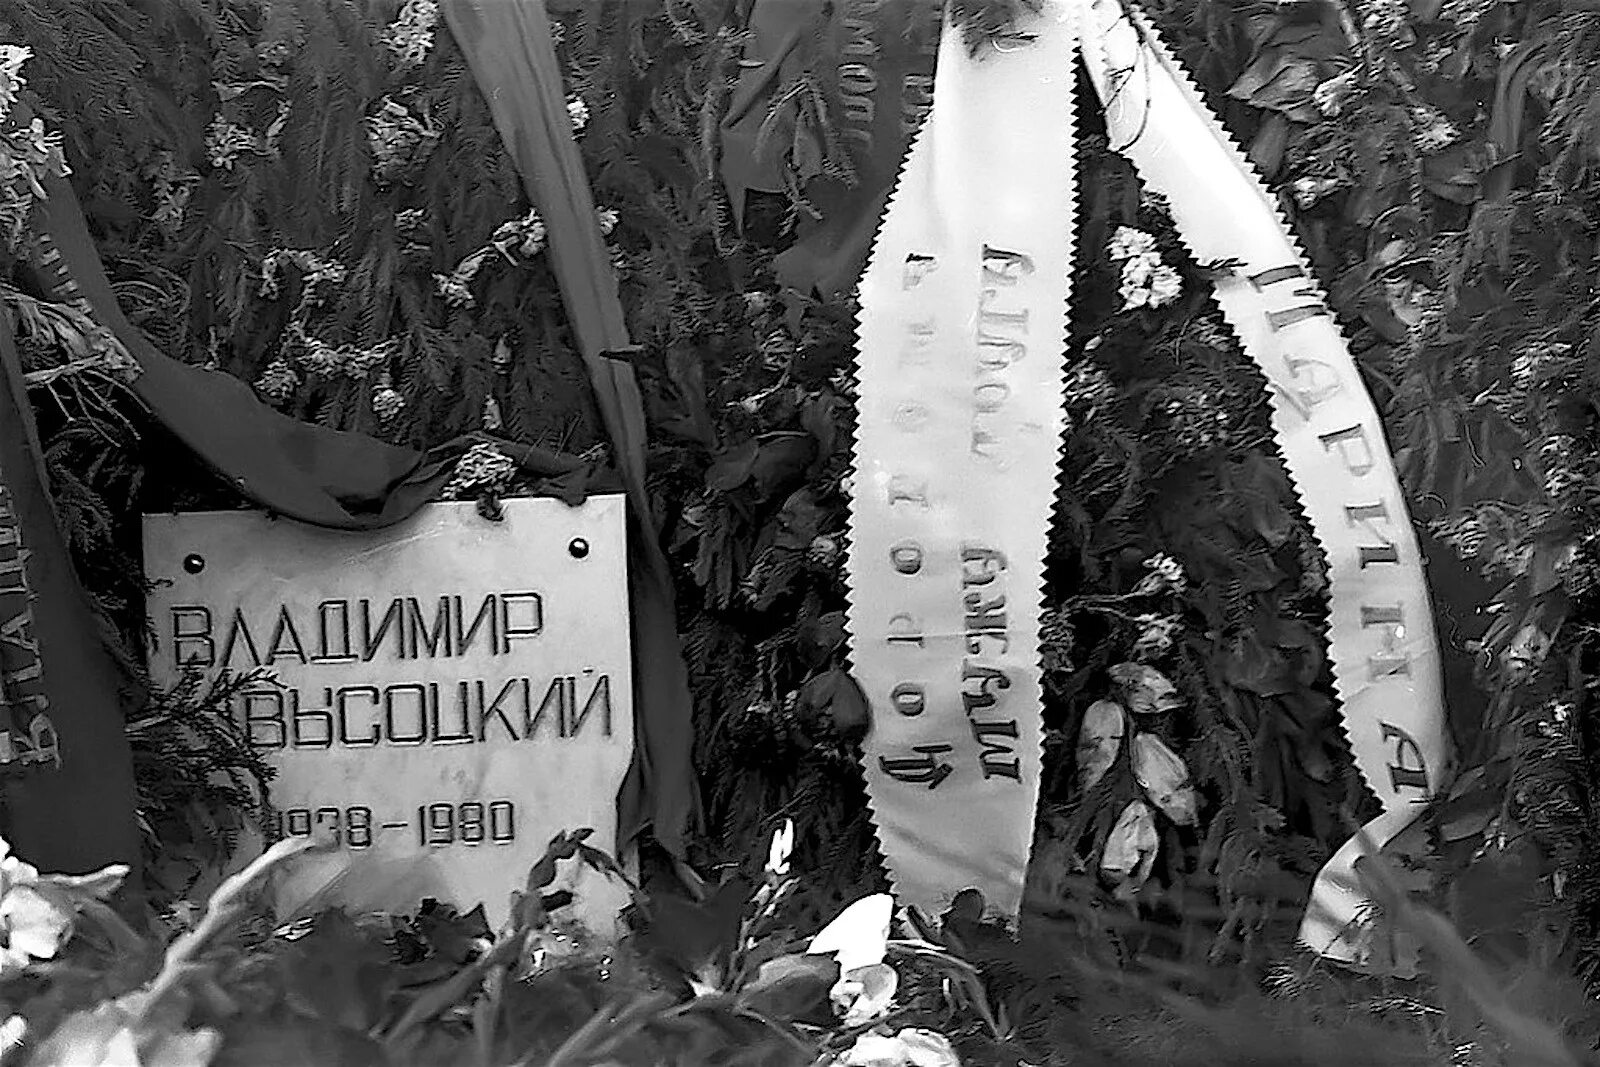 25 Июля 1980 Высоцкий похороны. Москва 1980 похороны Высоцкого.